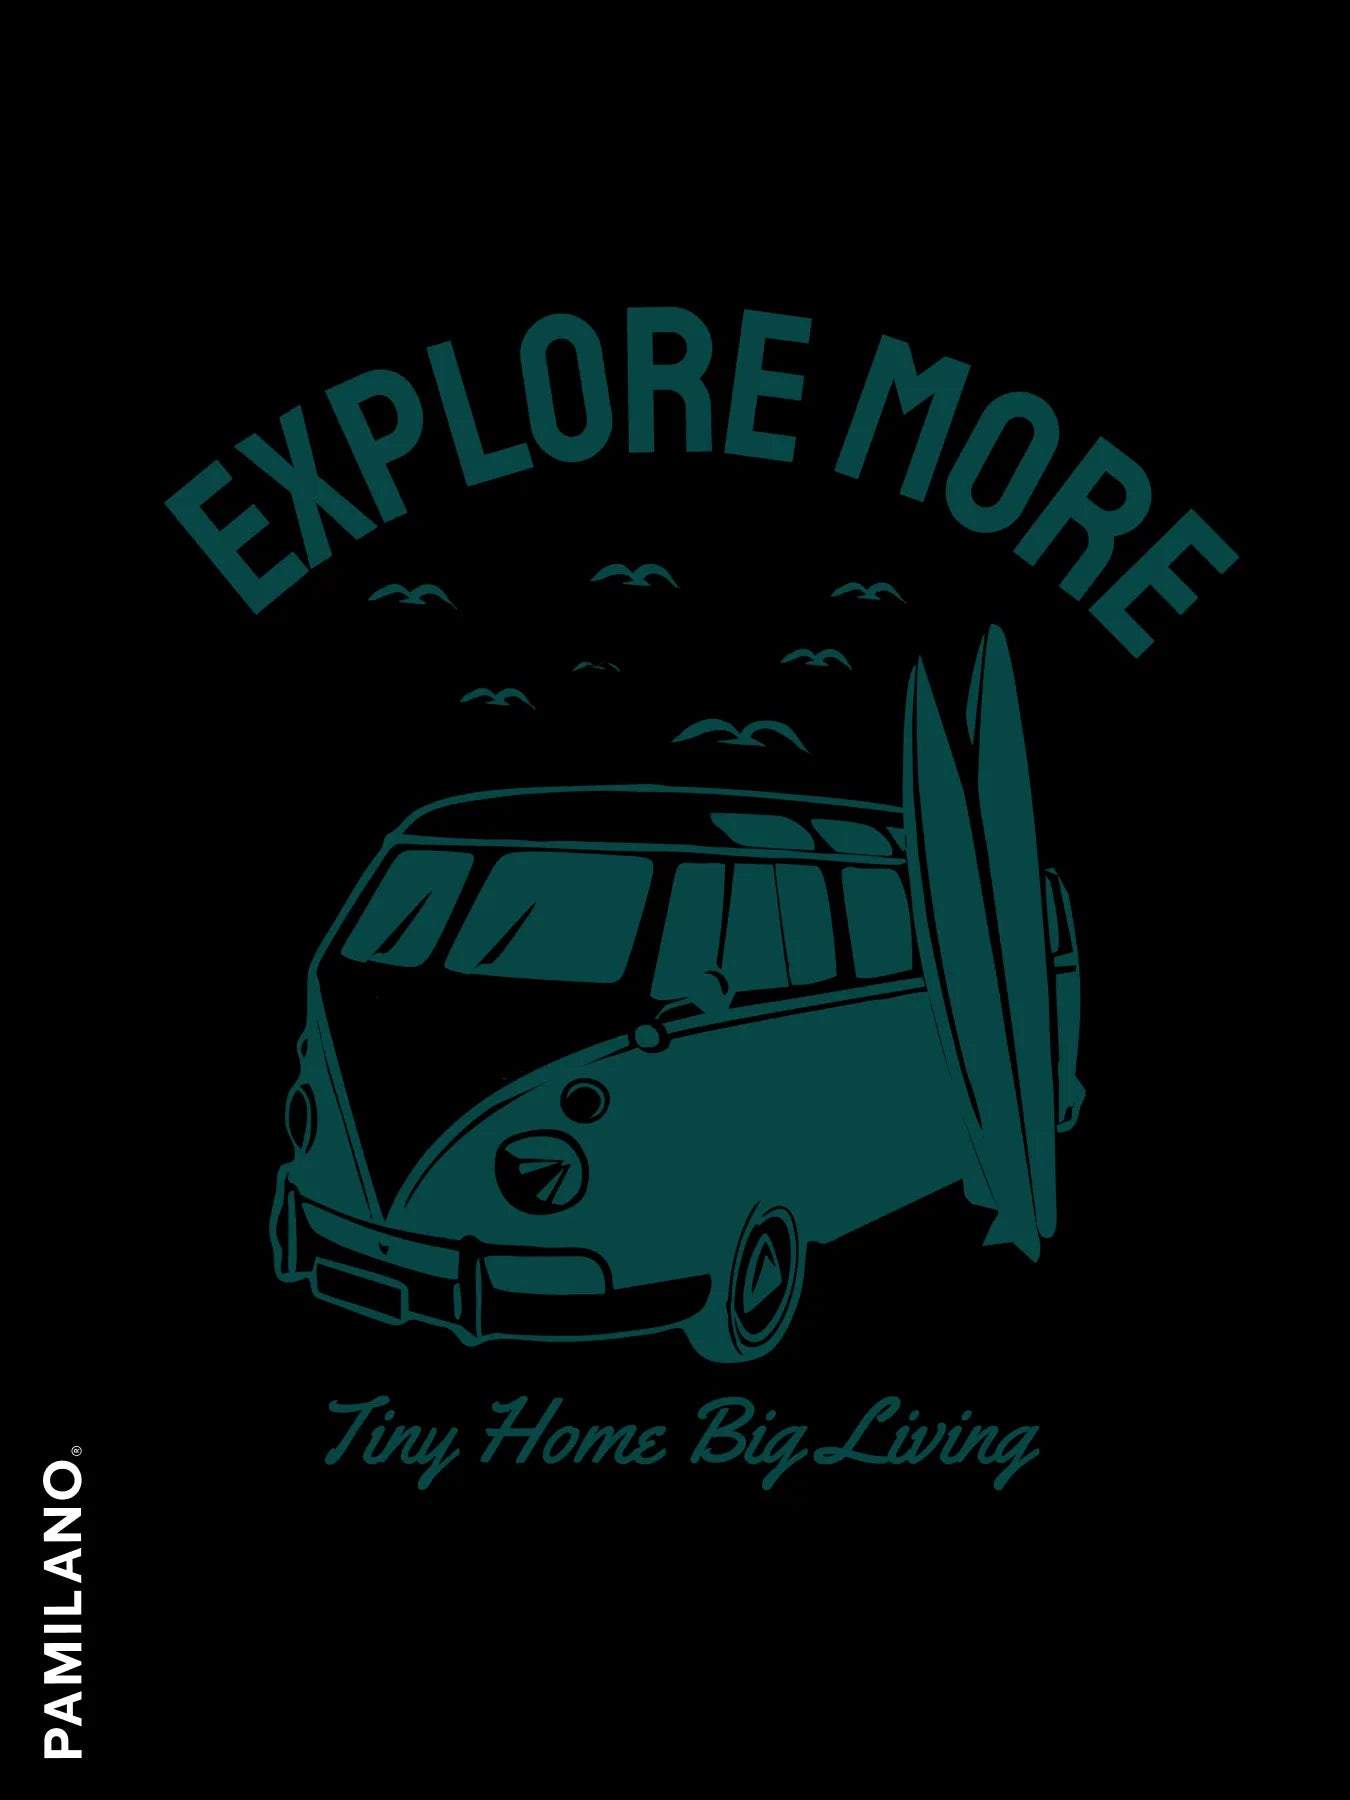 Explore More Printed t-shirt